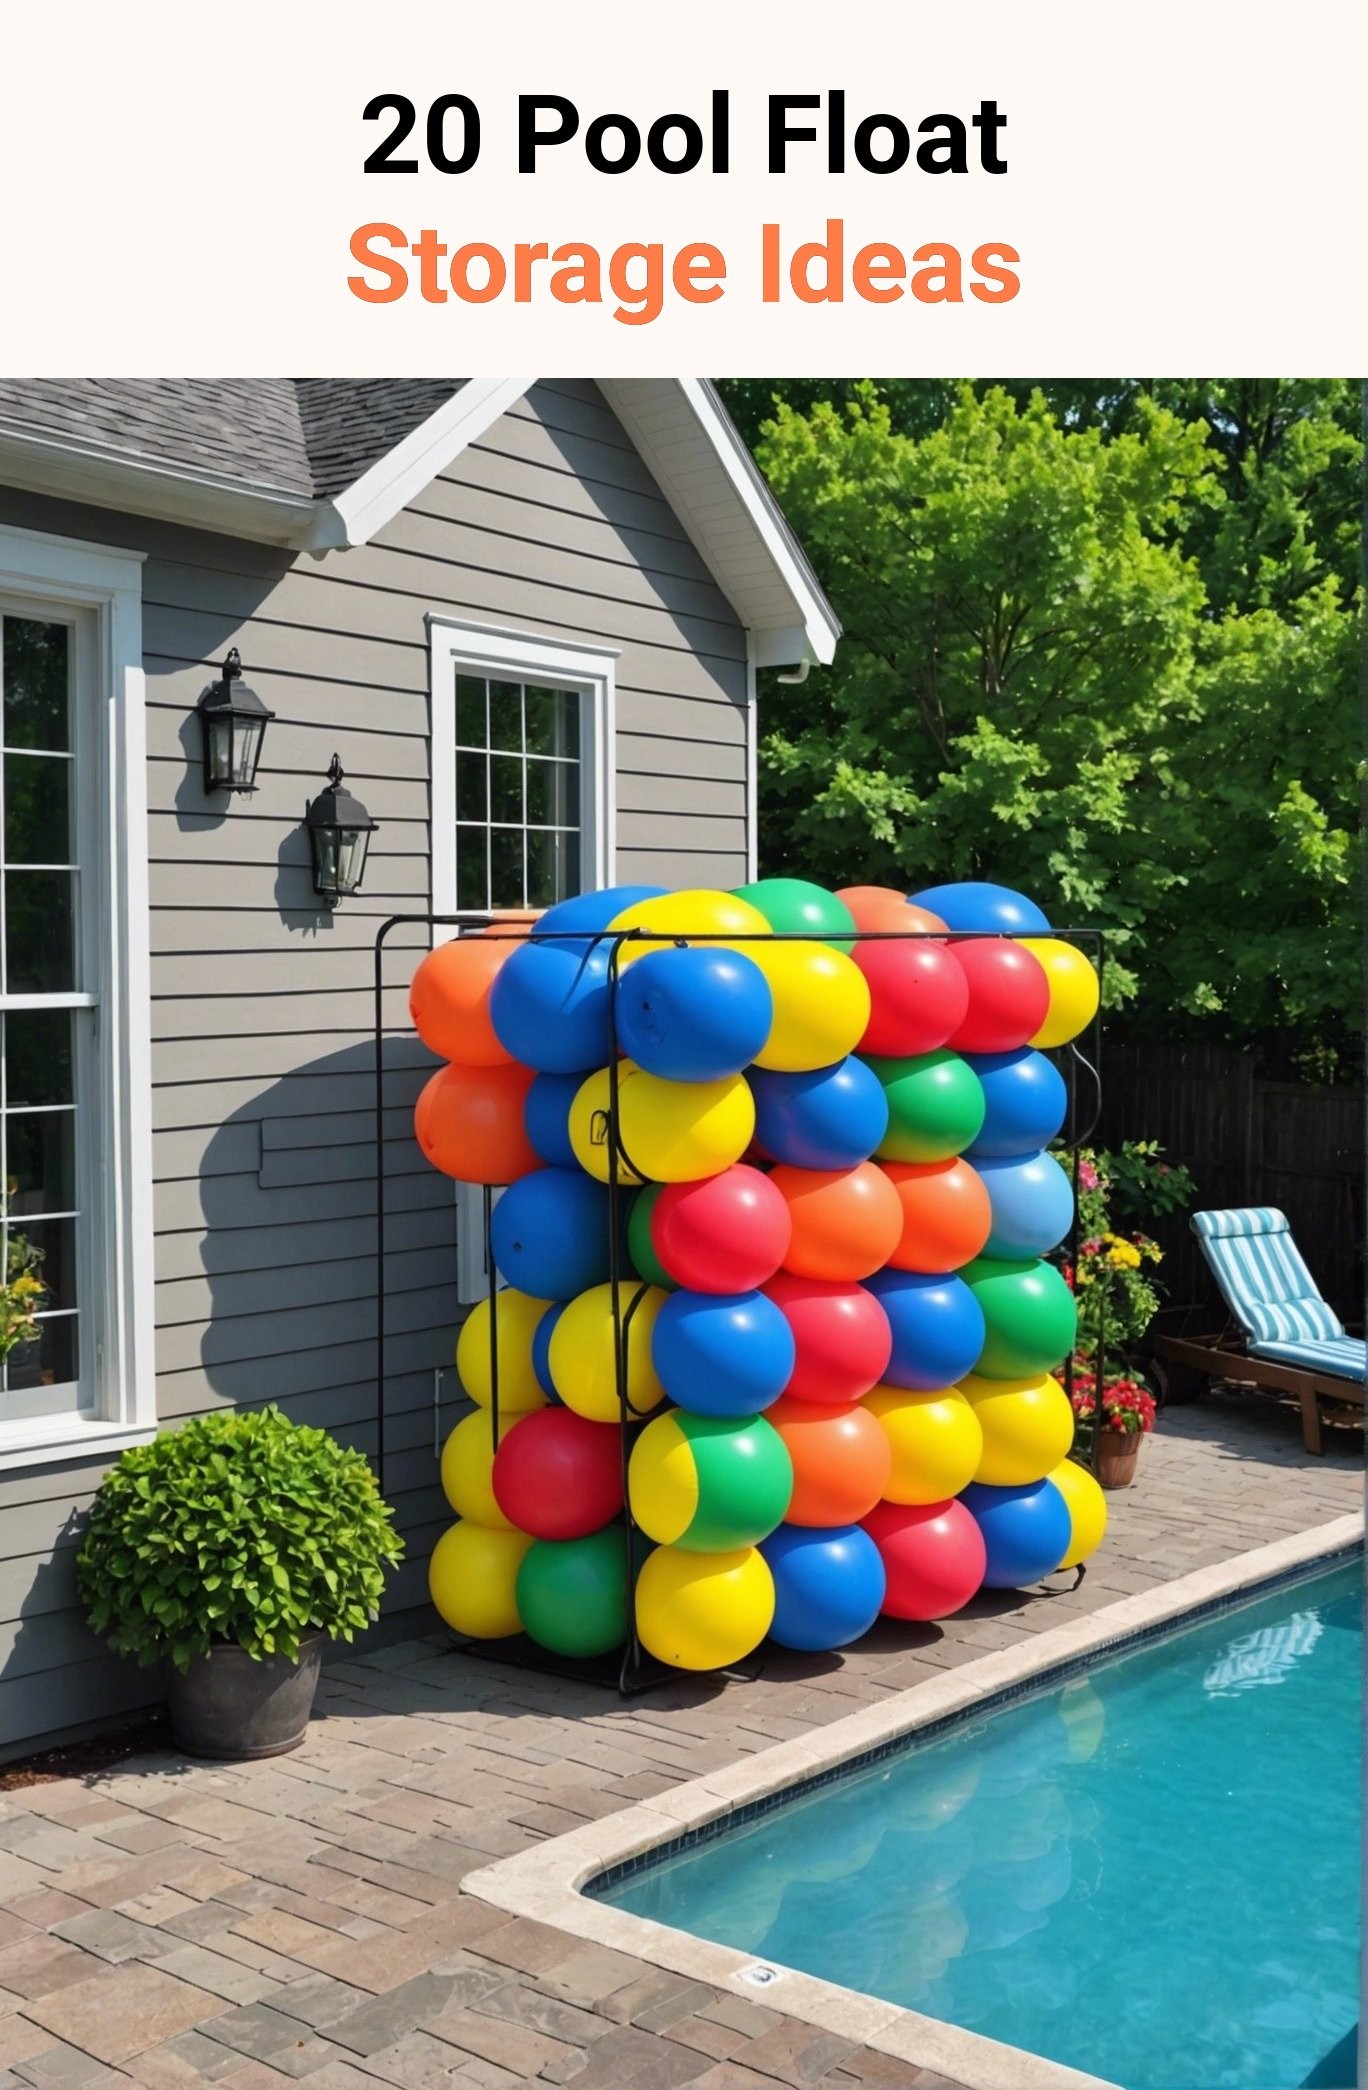 20 Pool Float Storage Ideas